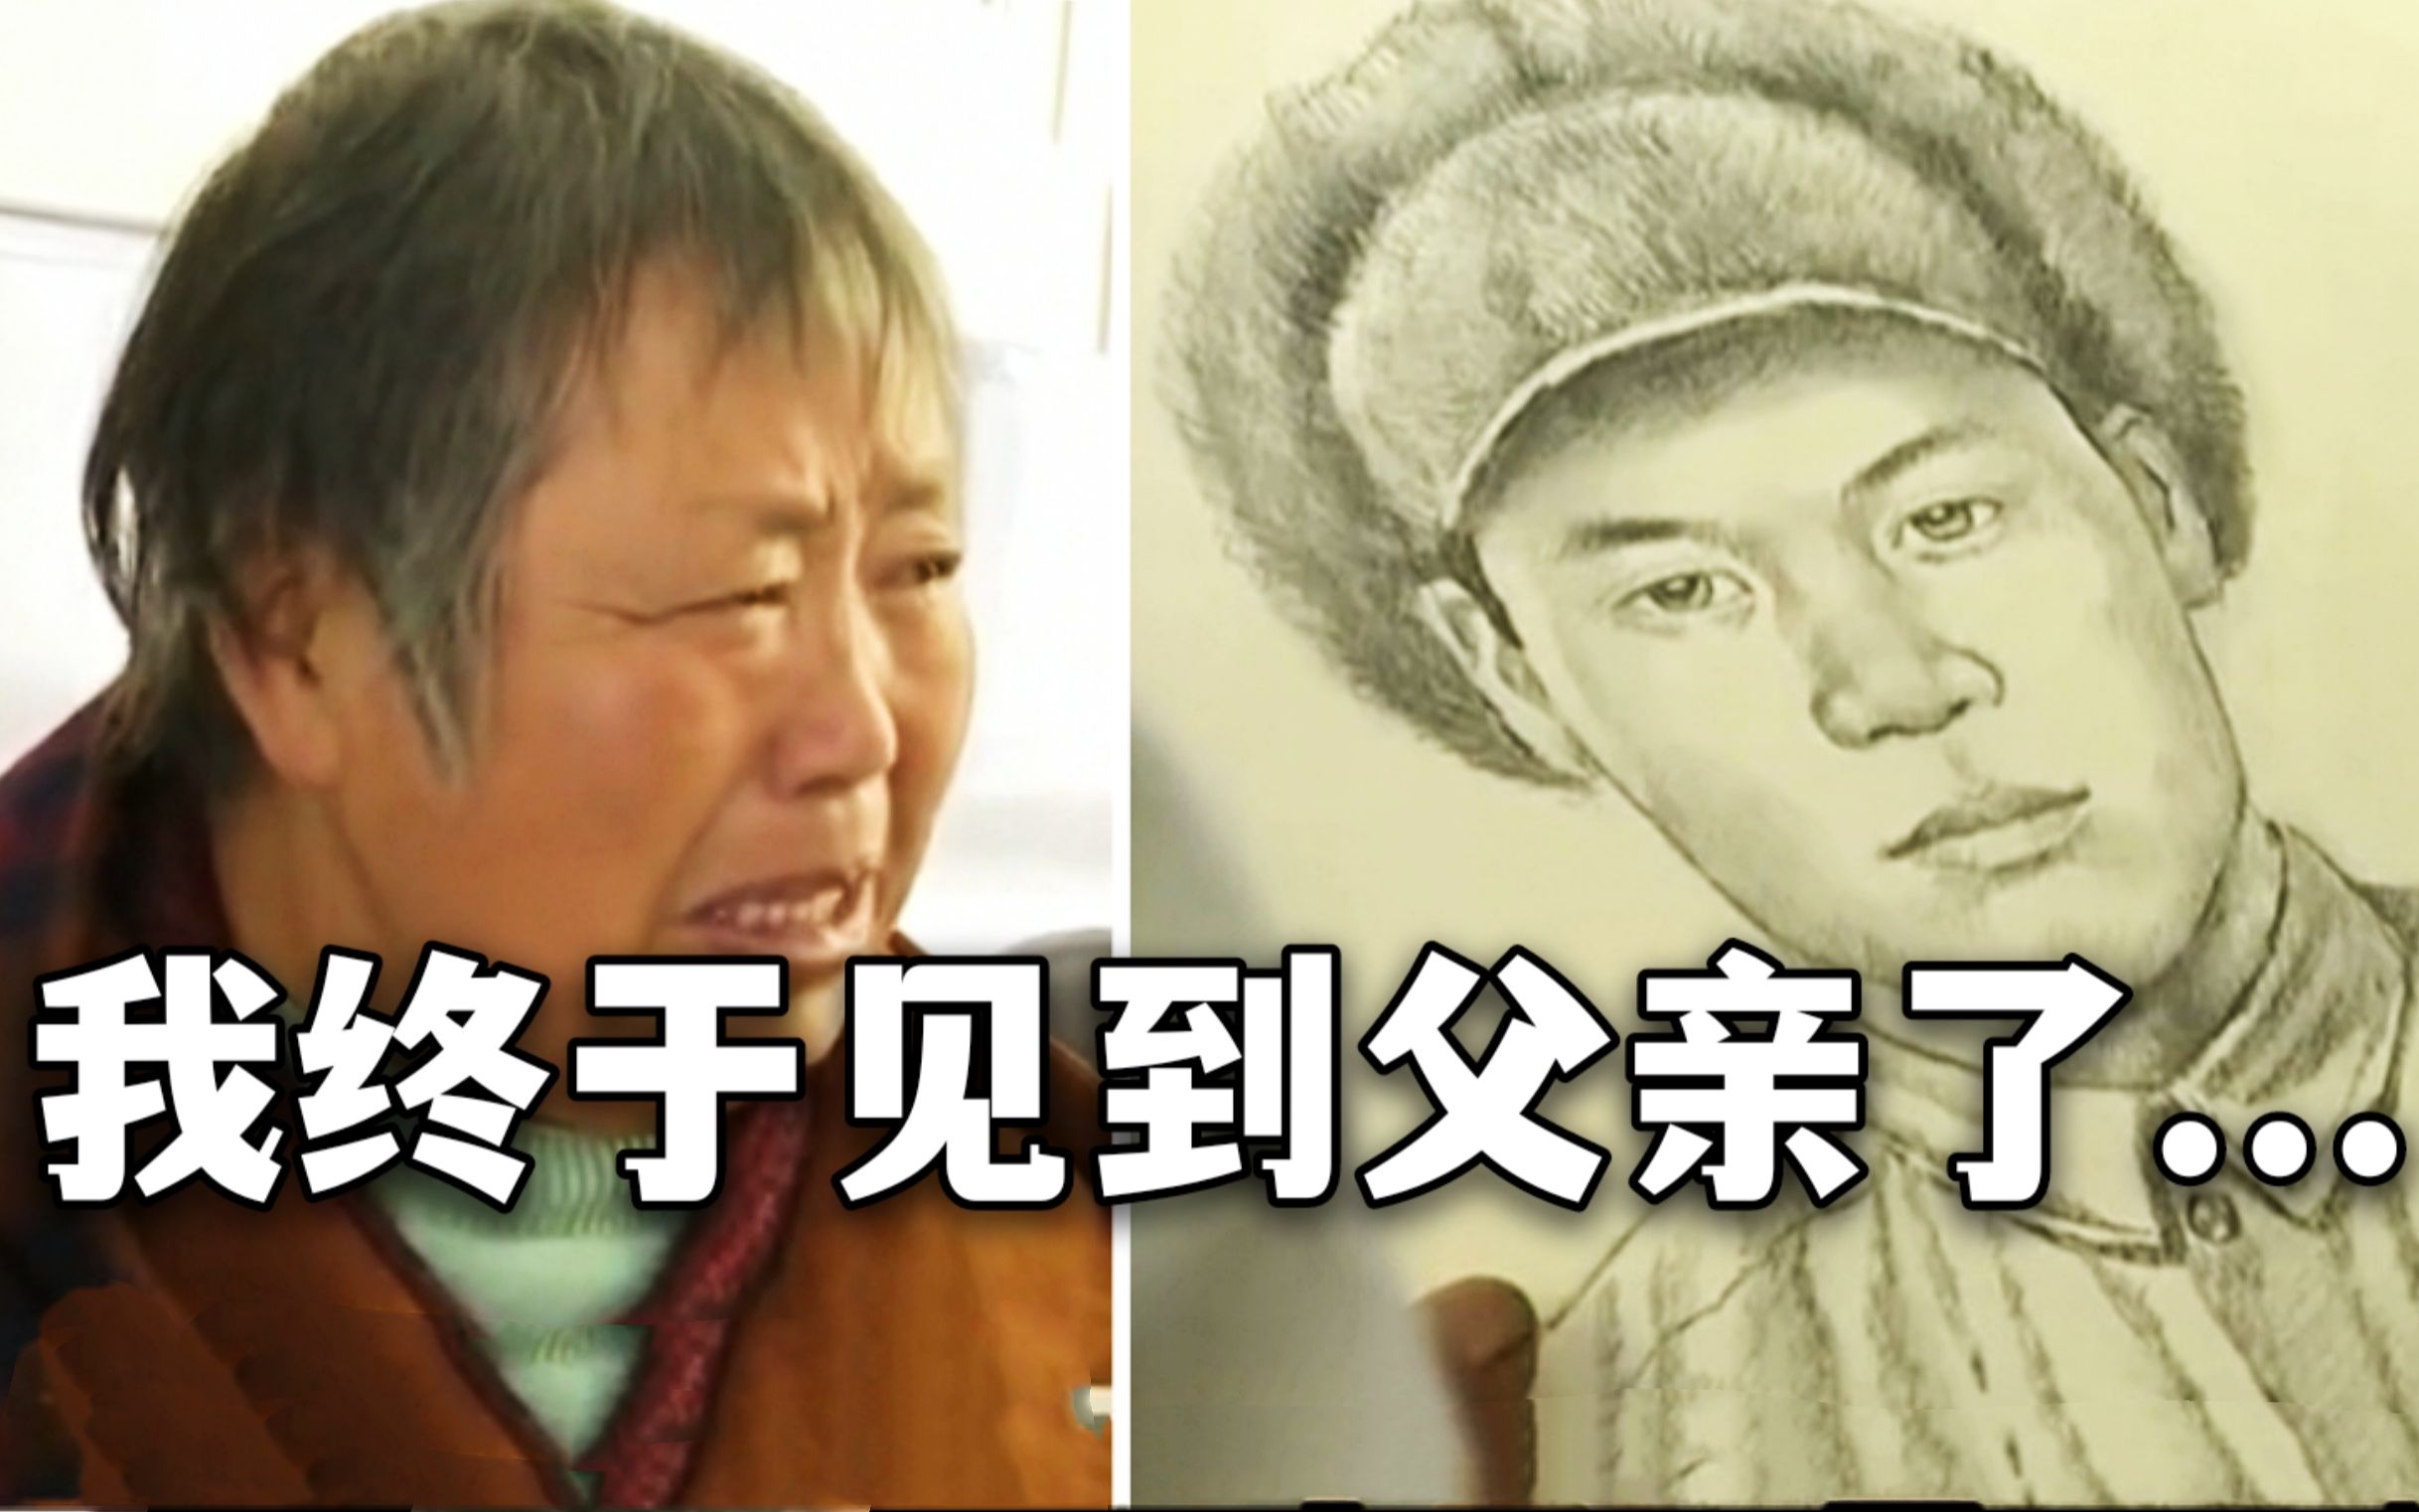 特殊的团聚！72岁女儿第一次见长津湖牺牲父亲的容貌